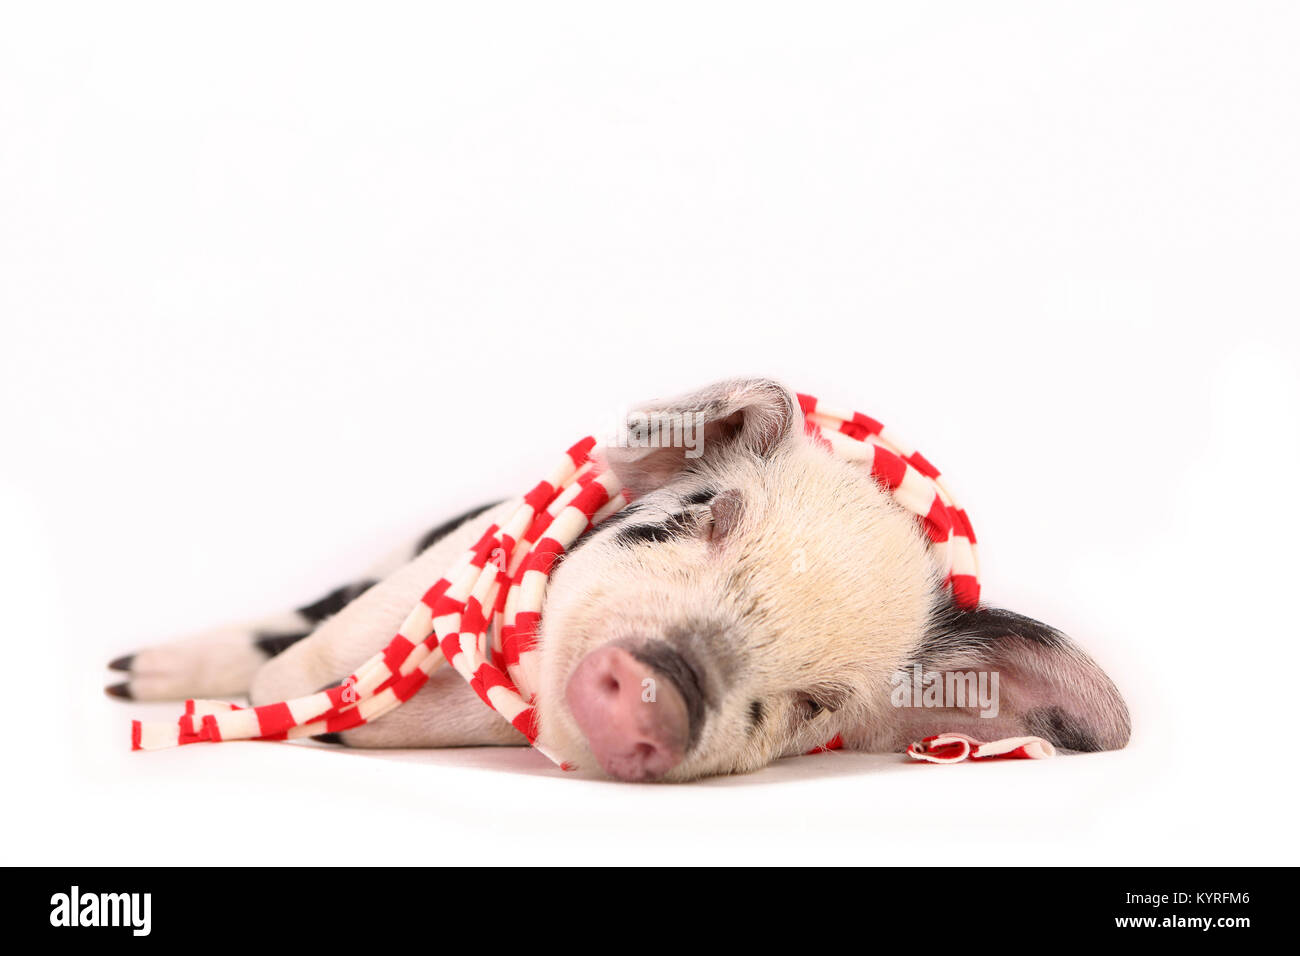 Porc domestique, Turopolje x ?. Porcinet (3 semaines) dormir, portant un foulard et blanc. Studio photo vu sur un fond blanc. Allemagne Banque D'Images